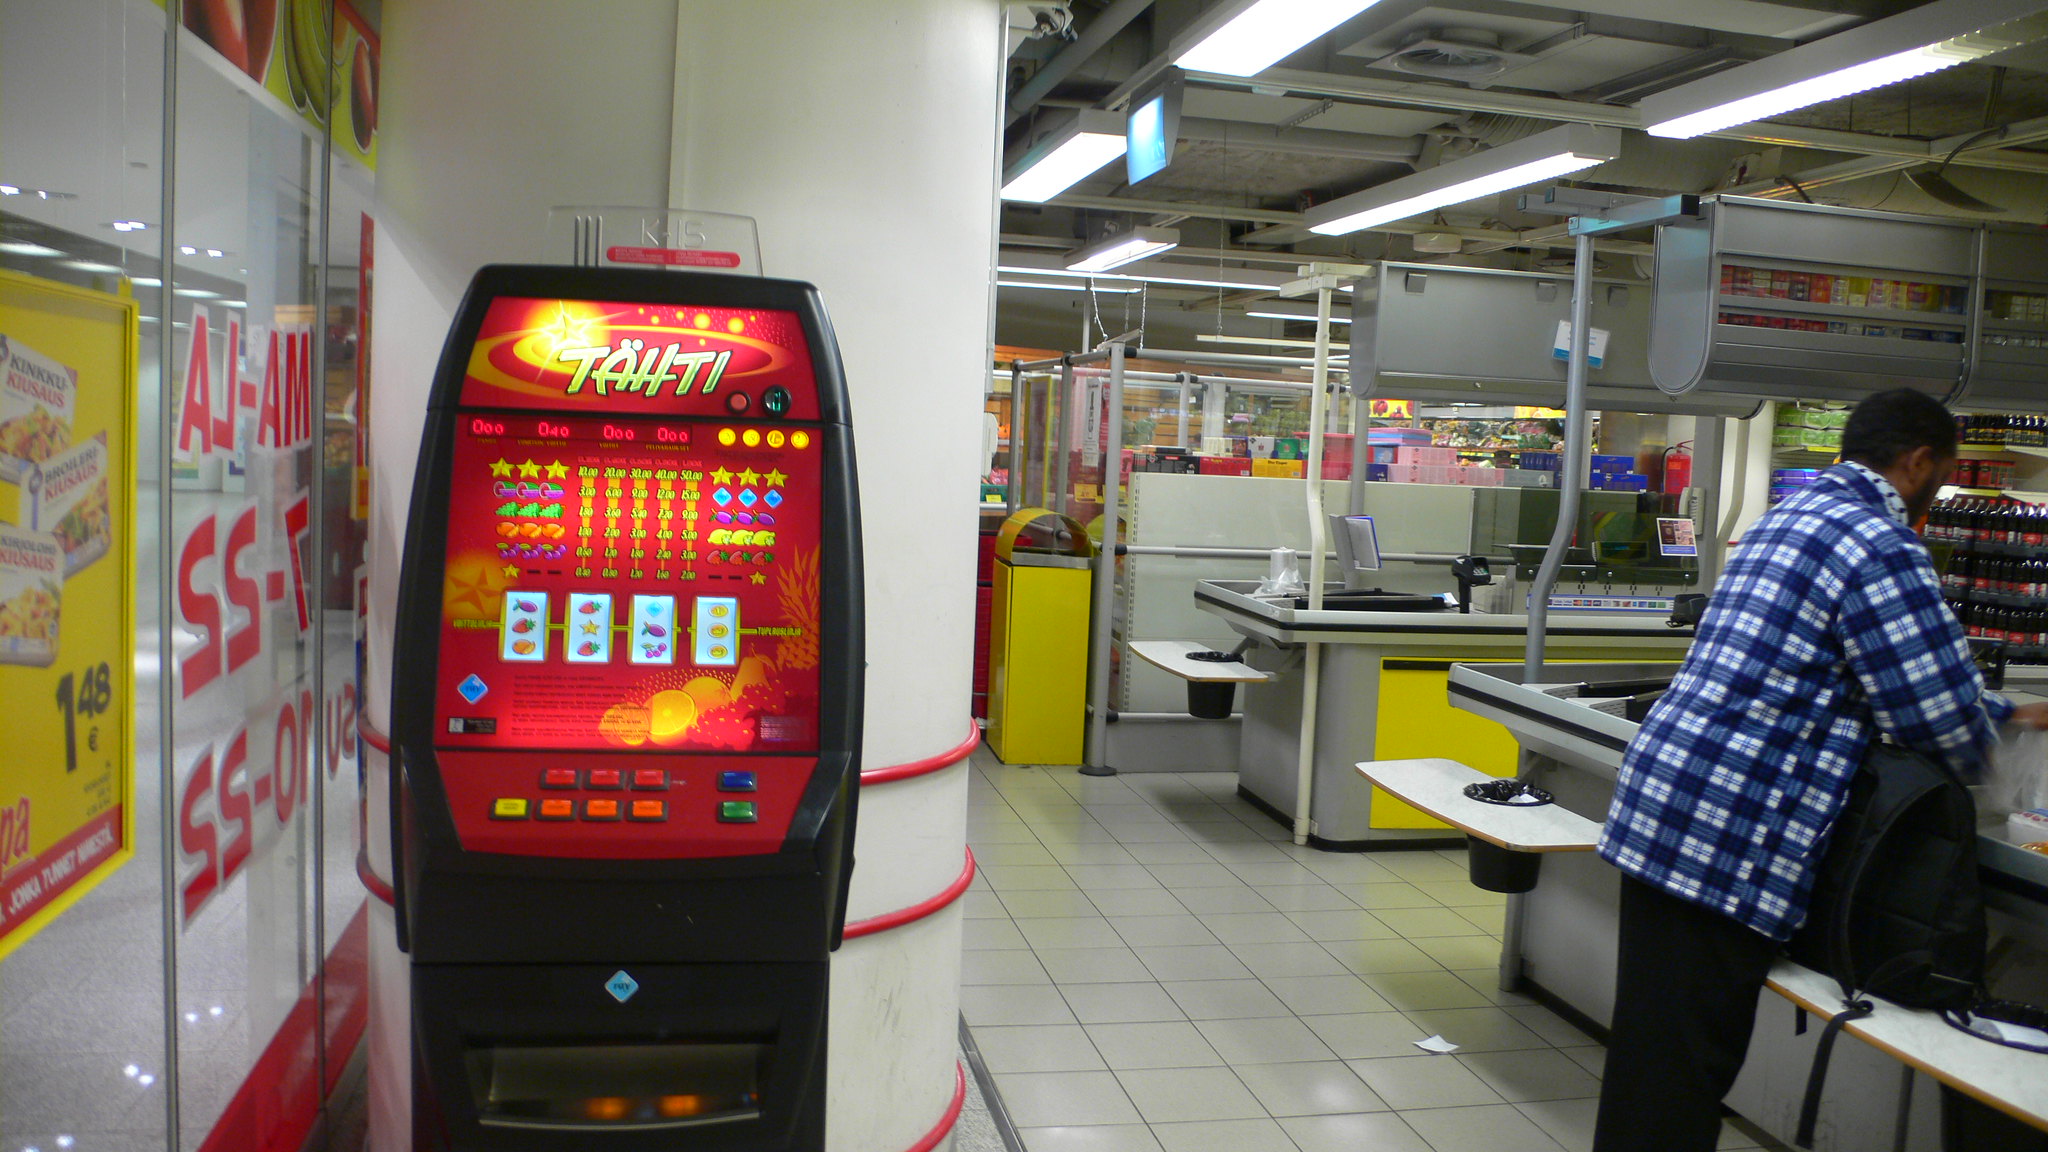 Spielgerät in einem Supermarkt|Spielautomat in einem finnischen Supermarkt